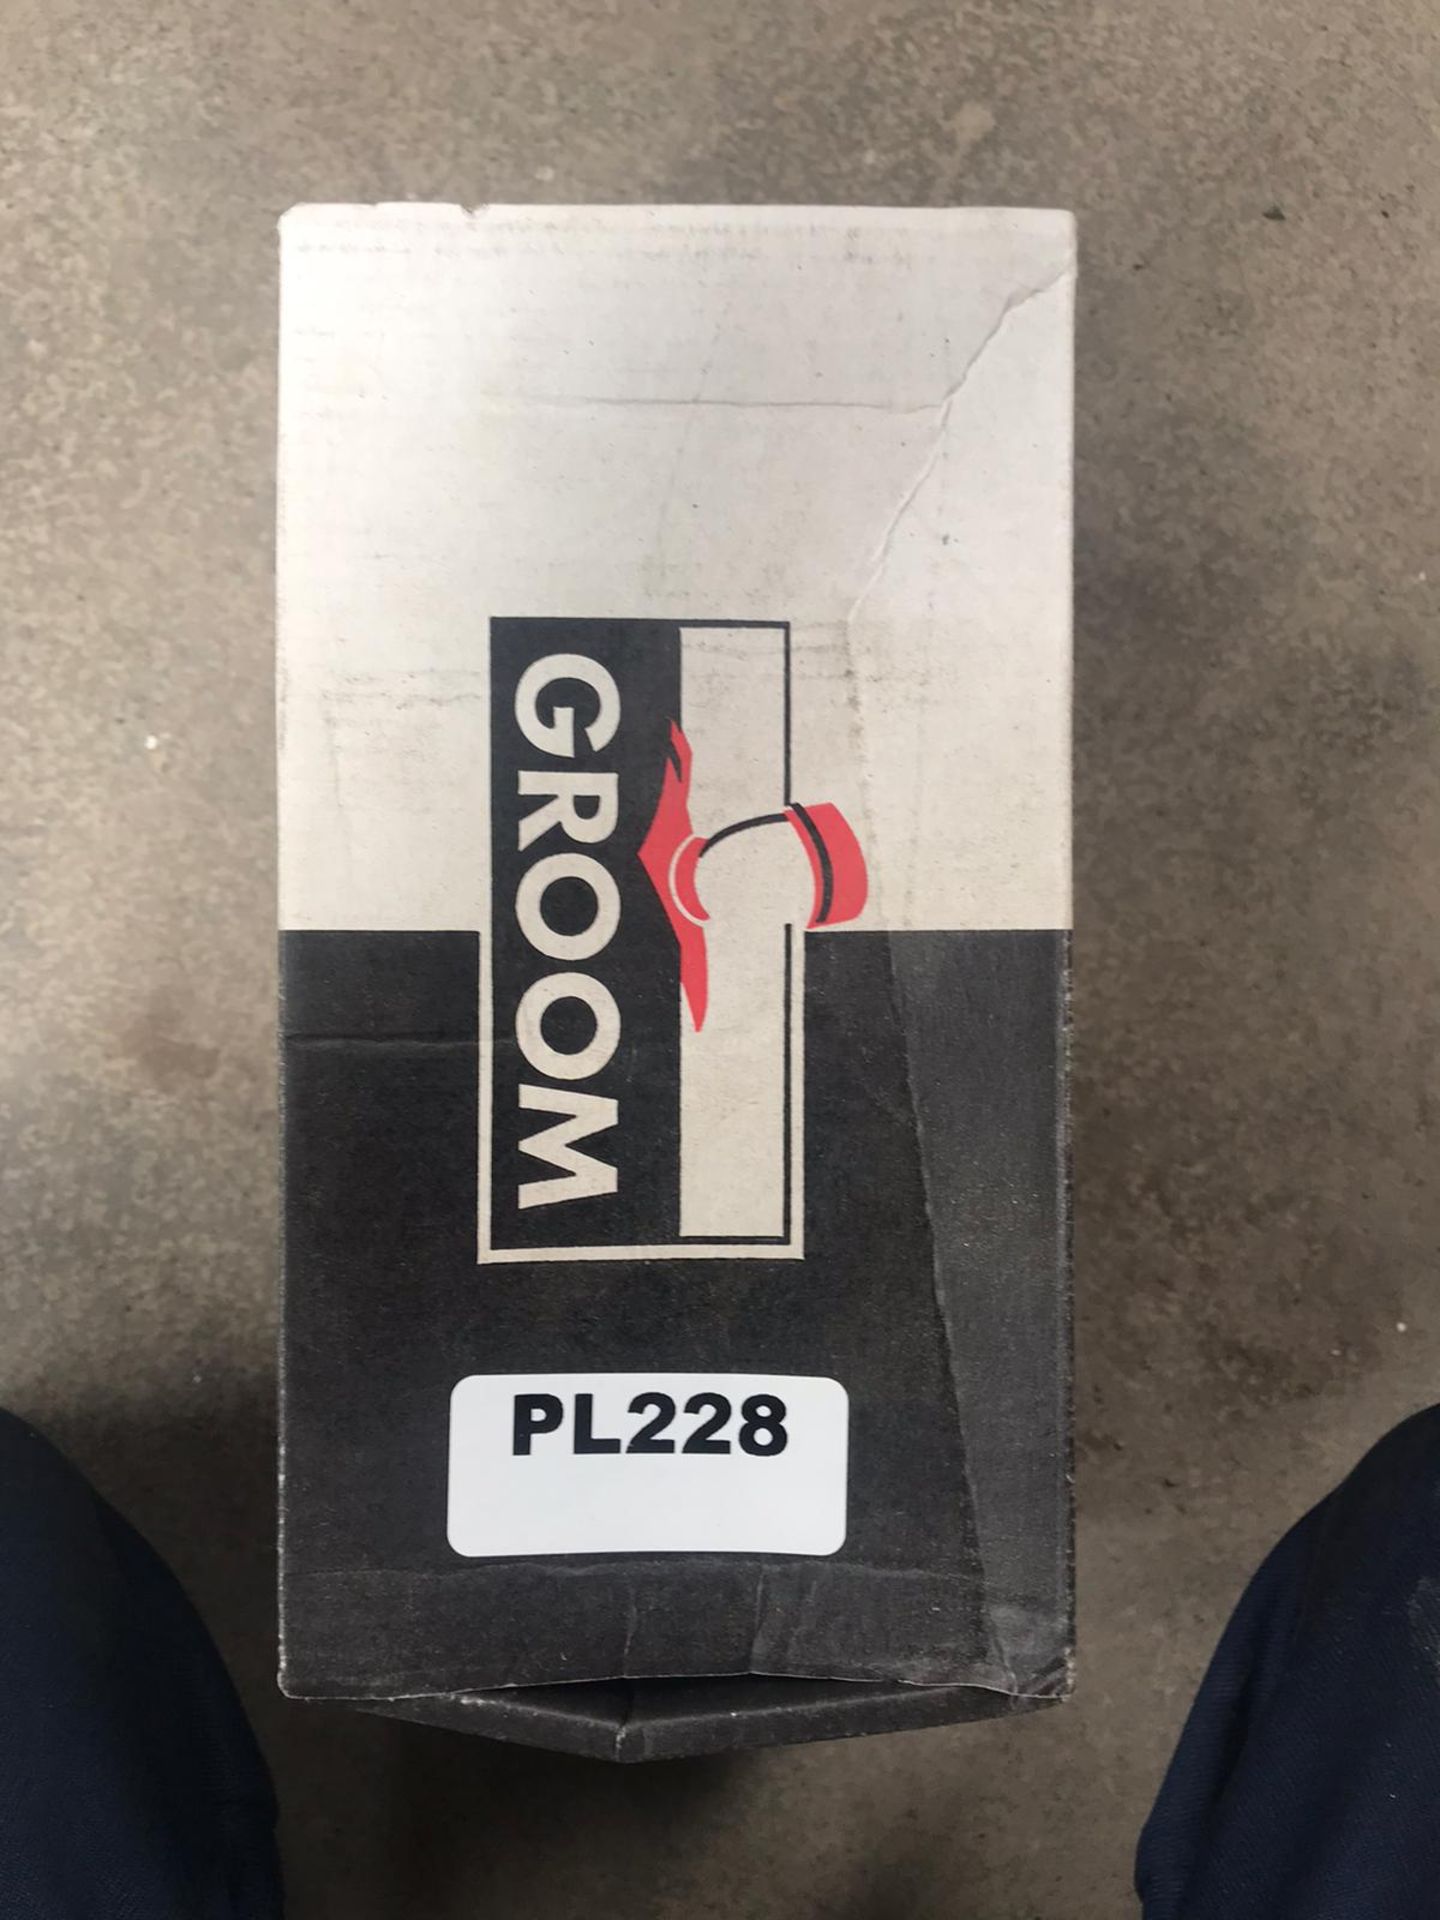 2 x Groom Floor Pivot and Door Closer - New Stock - Location: Peterlee, SR8 - - Image 2 of 4